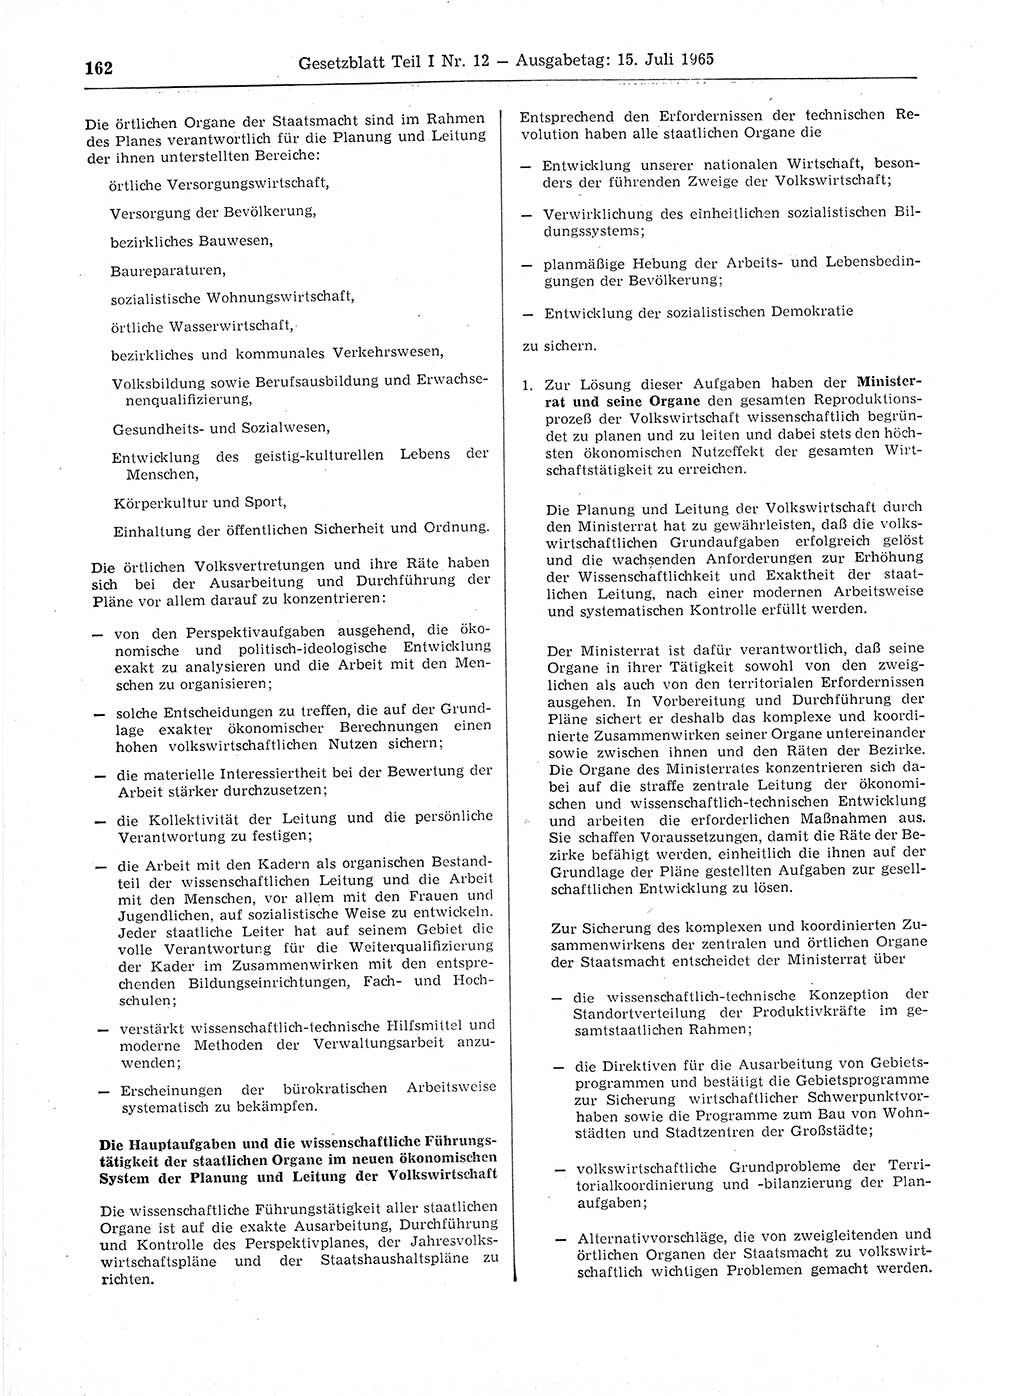 Gesetzblatt (GBl.) der Deutschen Demokratischen Republik (DDR) Teil Ⅰ 1965, Seite 162 (GBl. DDR Ⅰ 1965, S. 162)